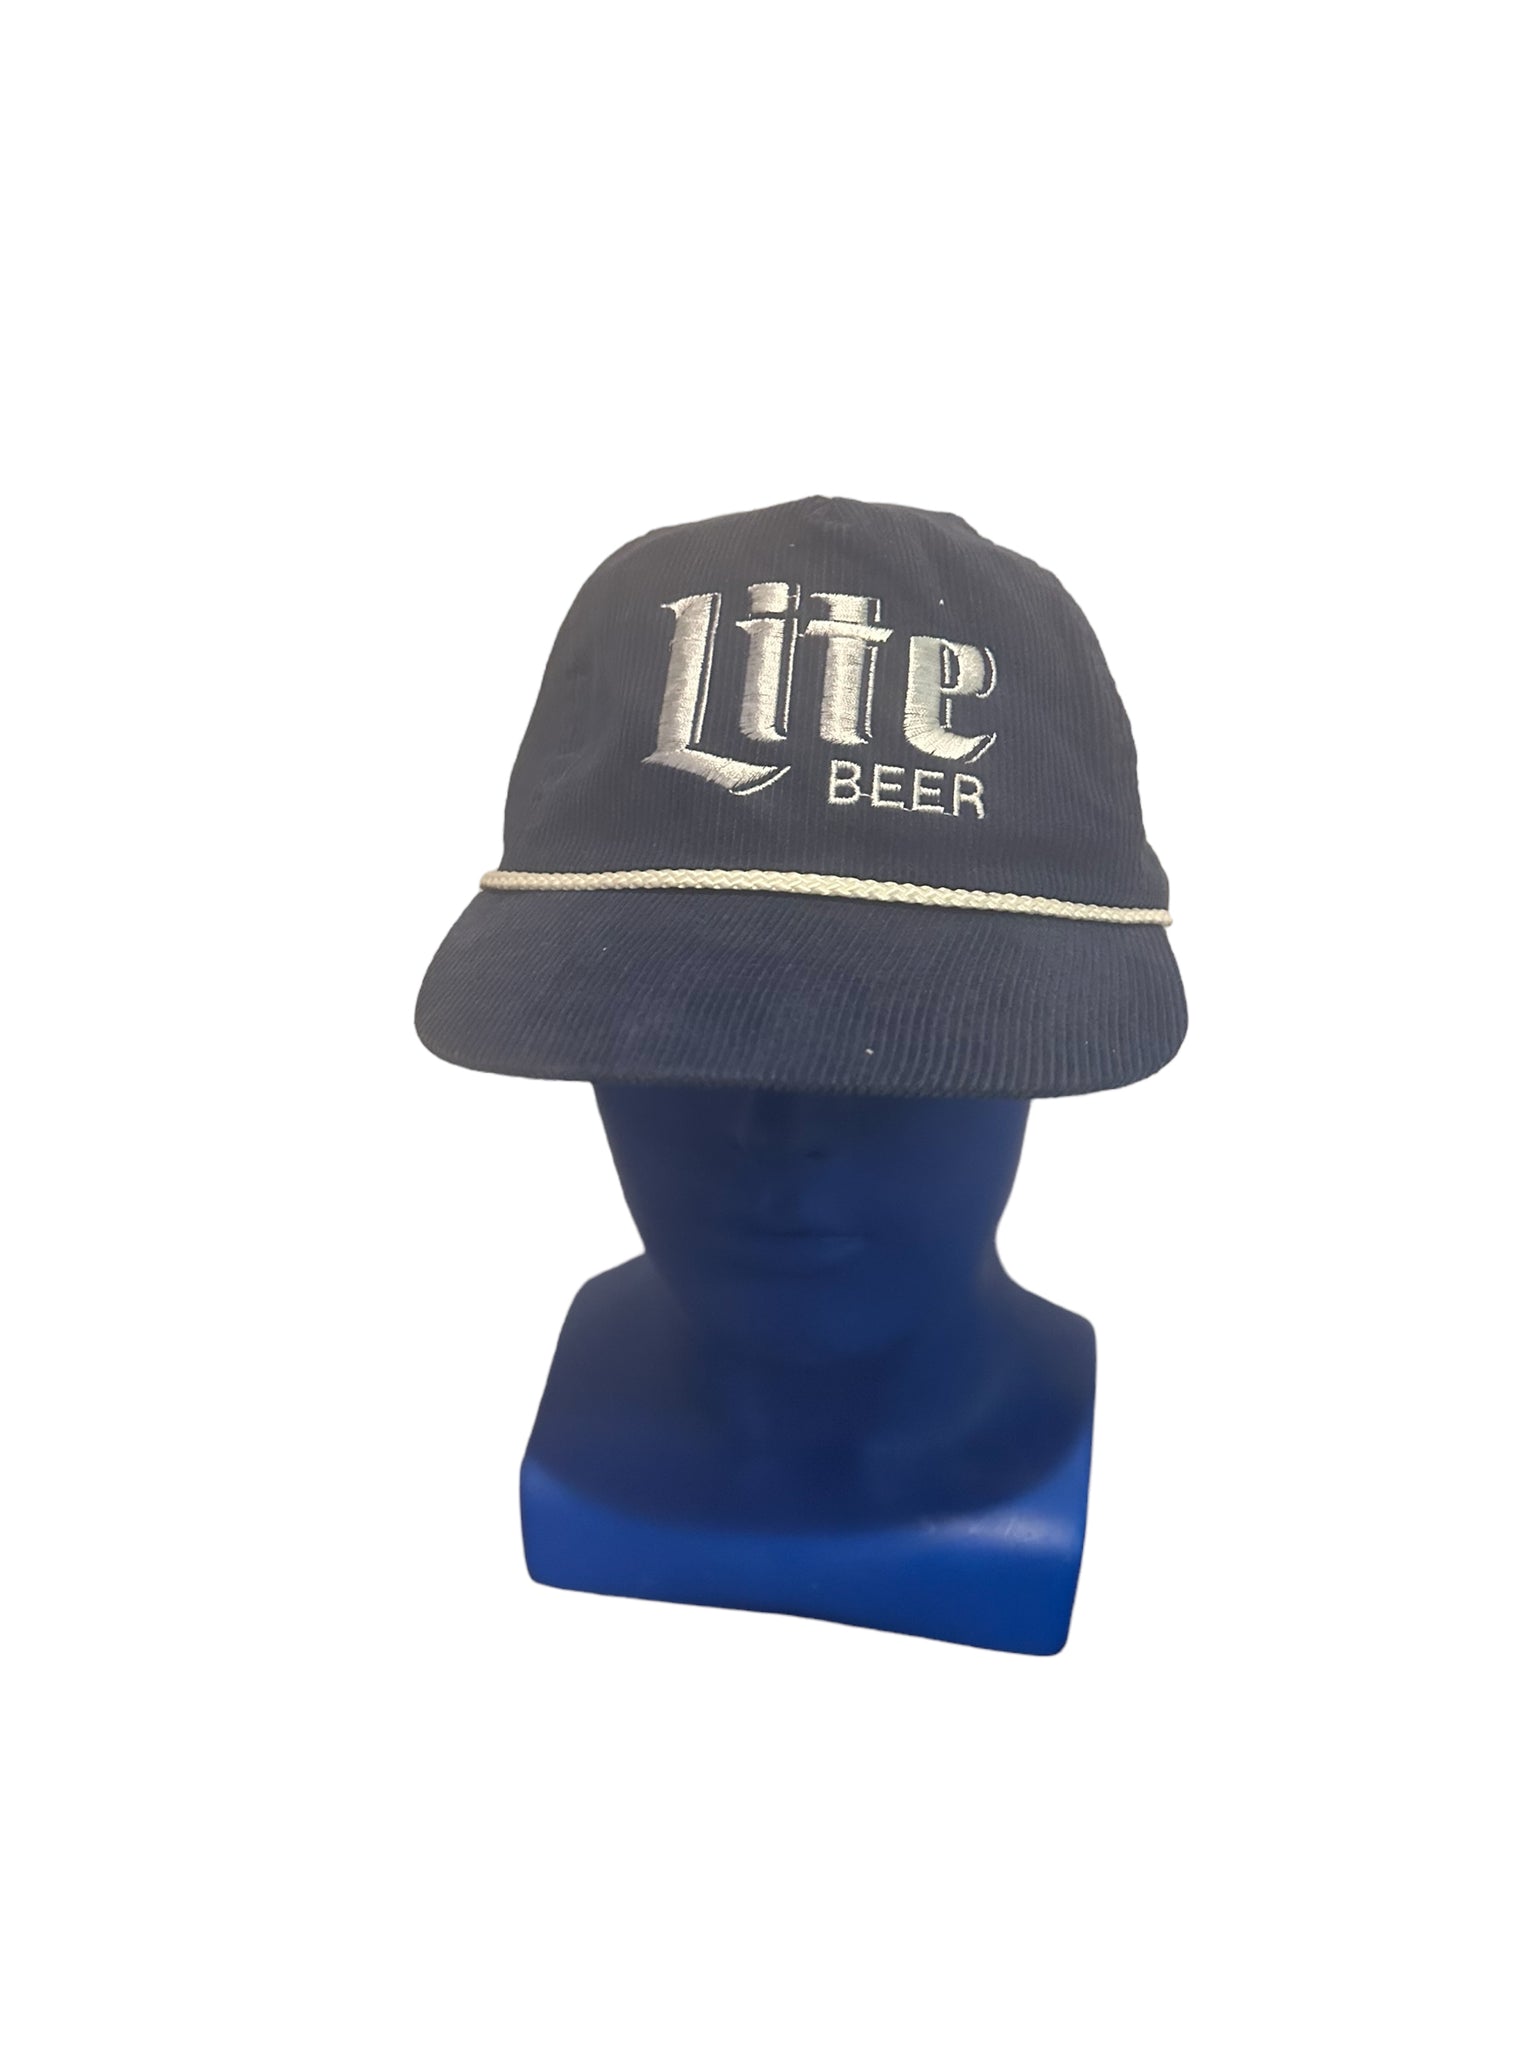 Vintage Miller Lite Beer Blue Corduroy Leather Strap Back Embroidered Hat - EUC